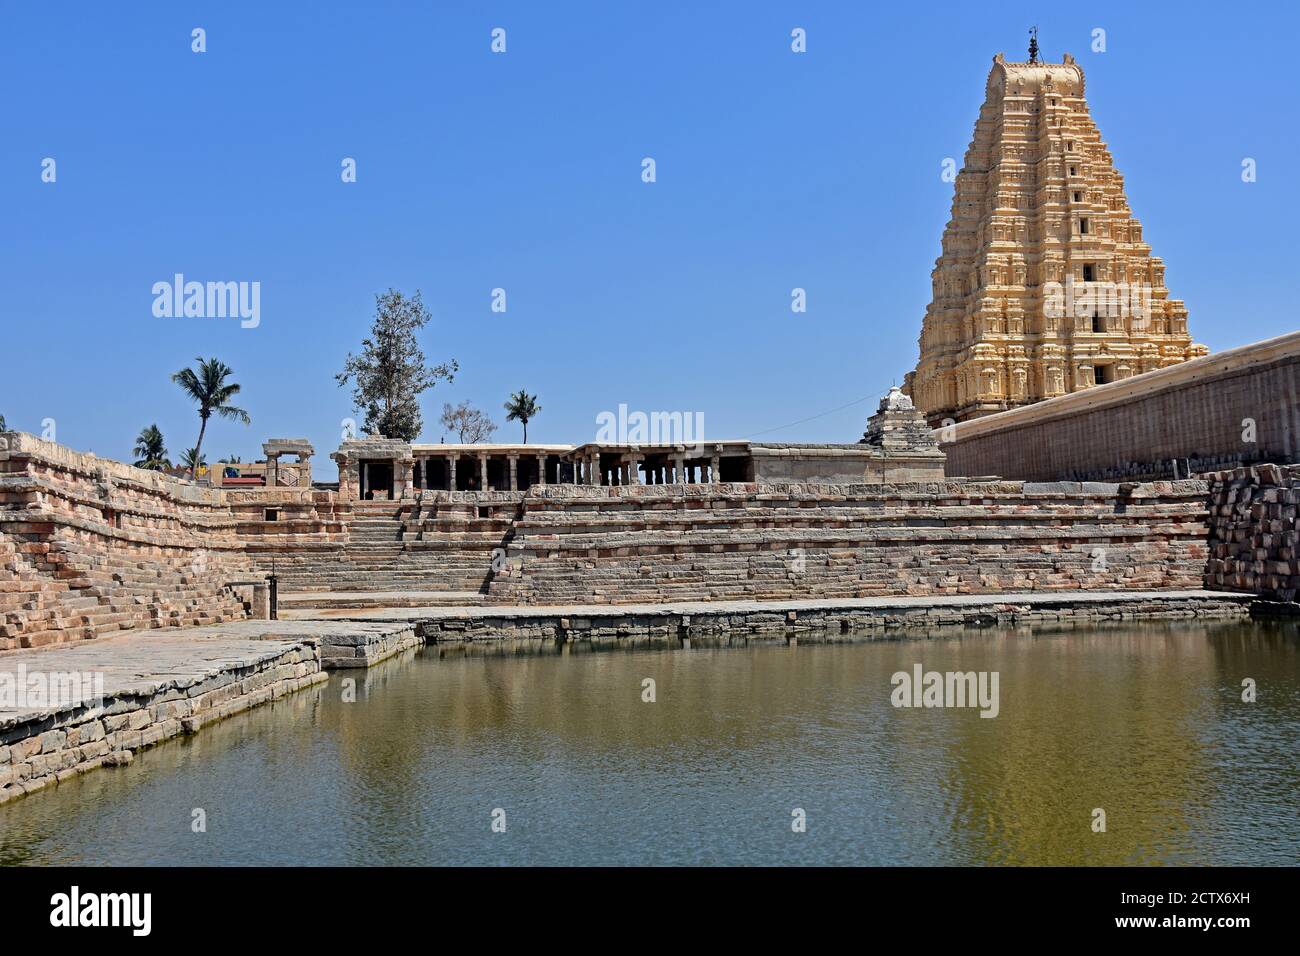 Vista del templo de Virupaksha desde la parte trasera con estanque, situado en las ruinas de la antigua ciudad de Vijayanagar en Hampi, India. Foto de stock